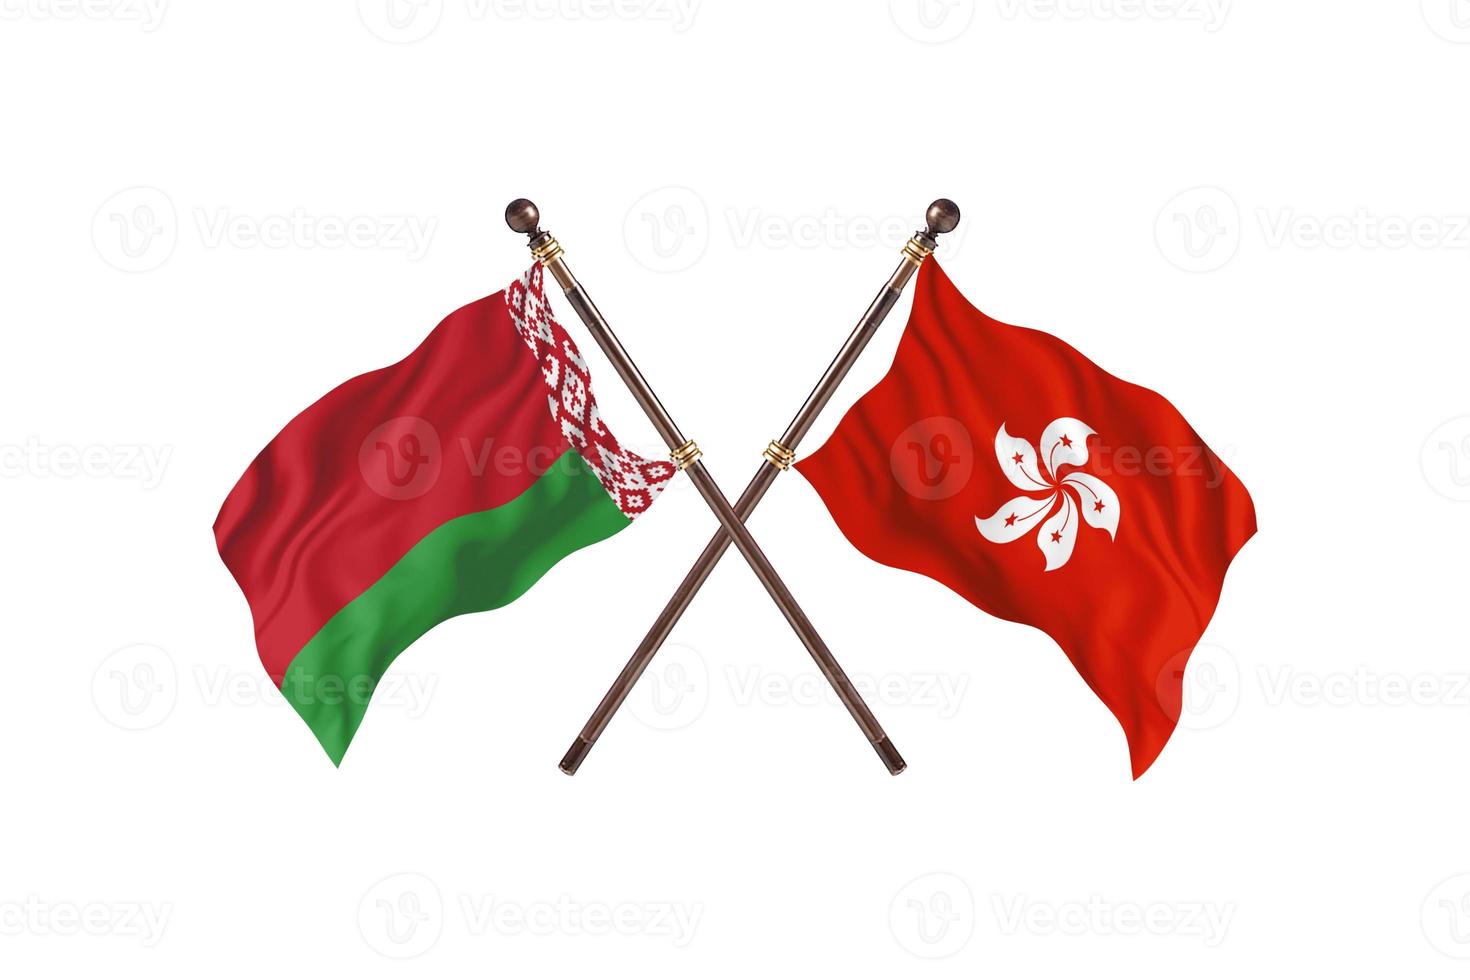 biélorussie contre hong kong deux drapeaux de pays photo